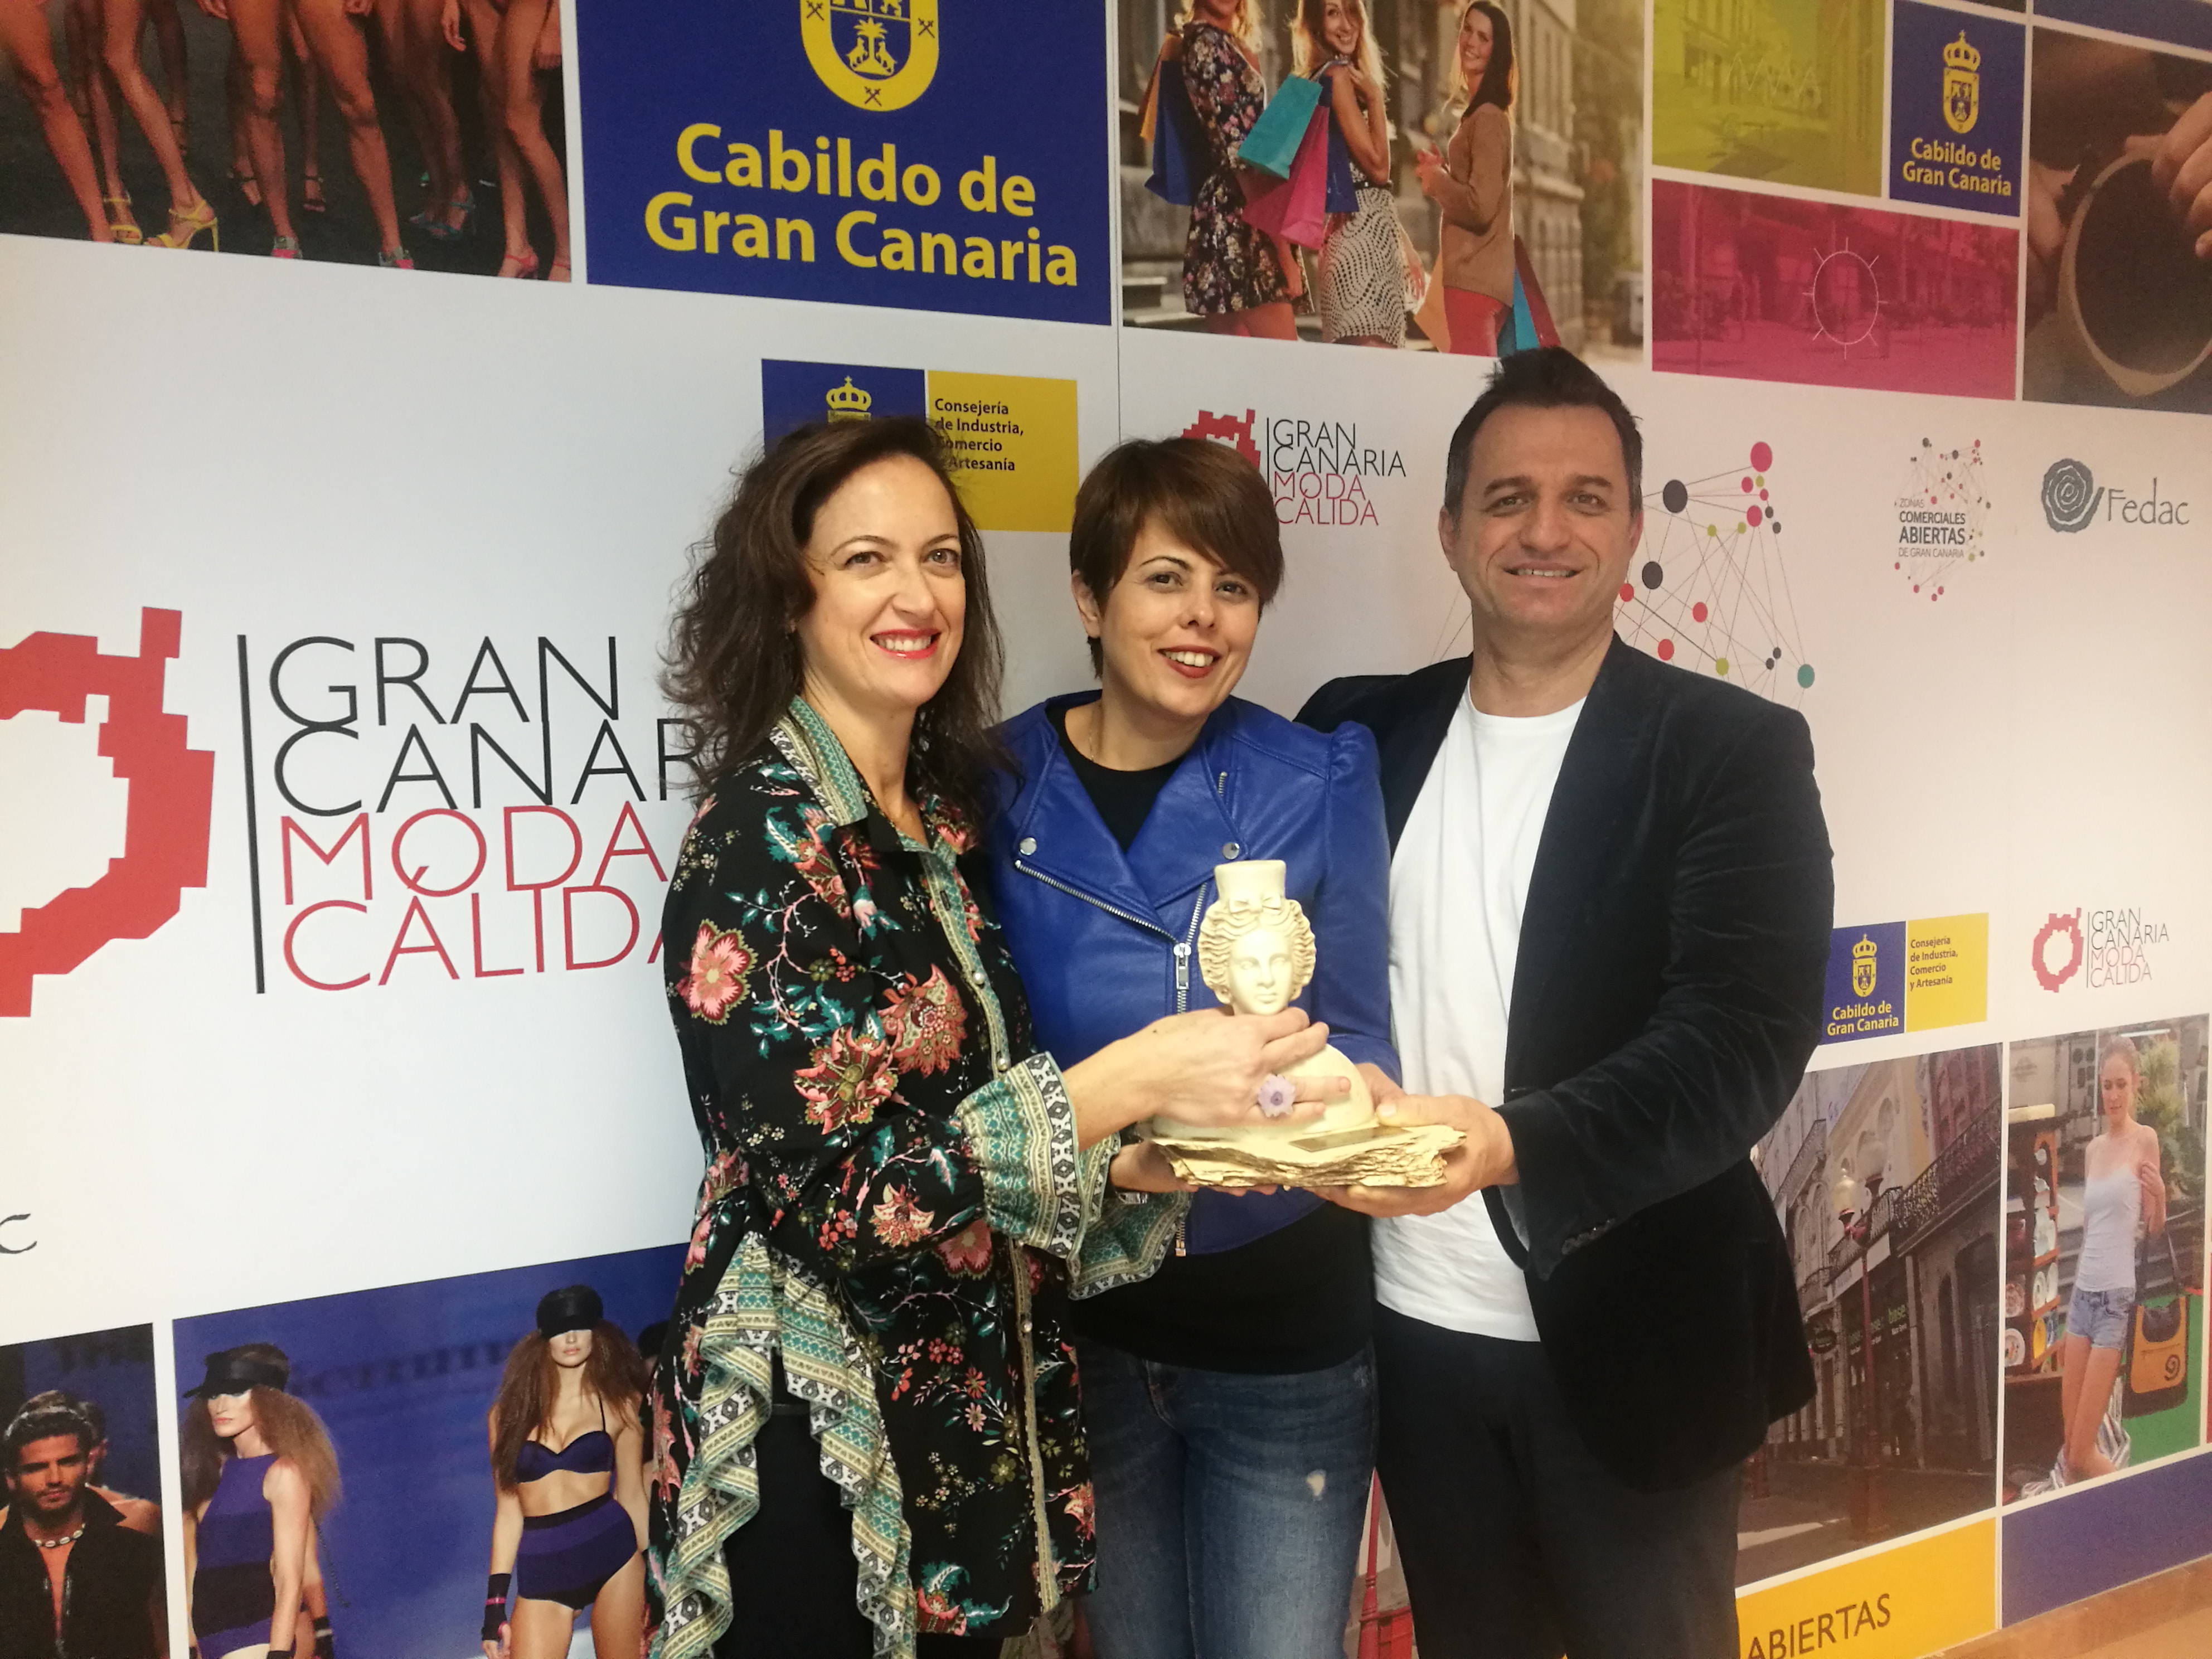 Susana Requena comparte con Gran Canaria Moda Cálida el premio nacional Prenamo a la Excelencia Empresarial 2018